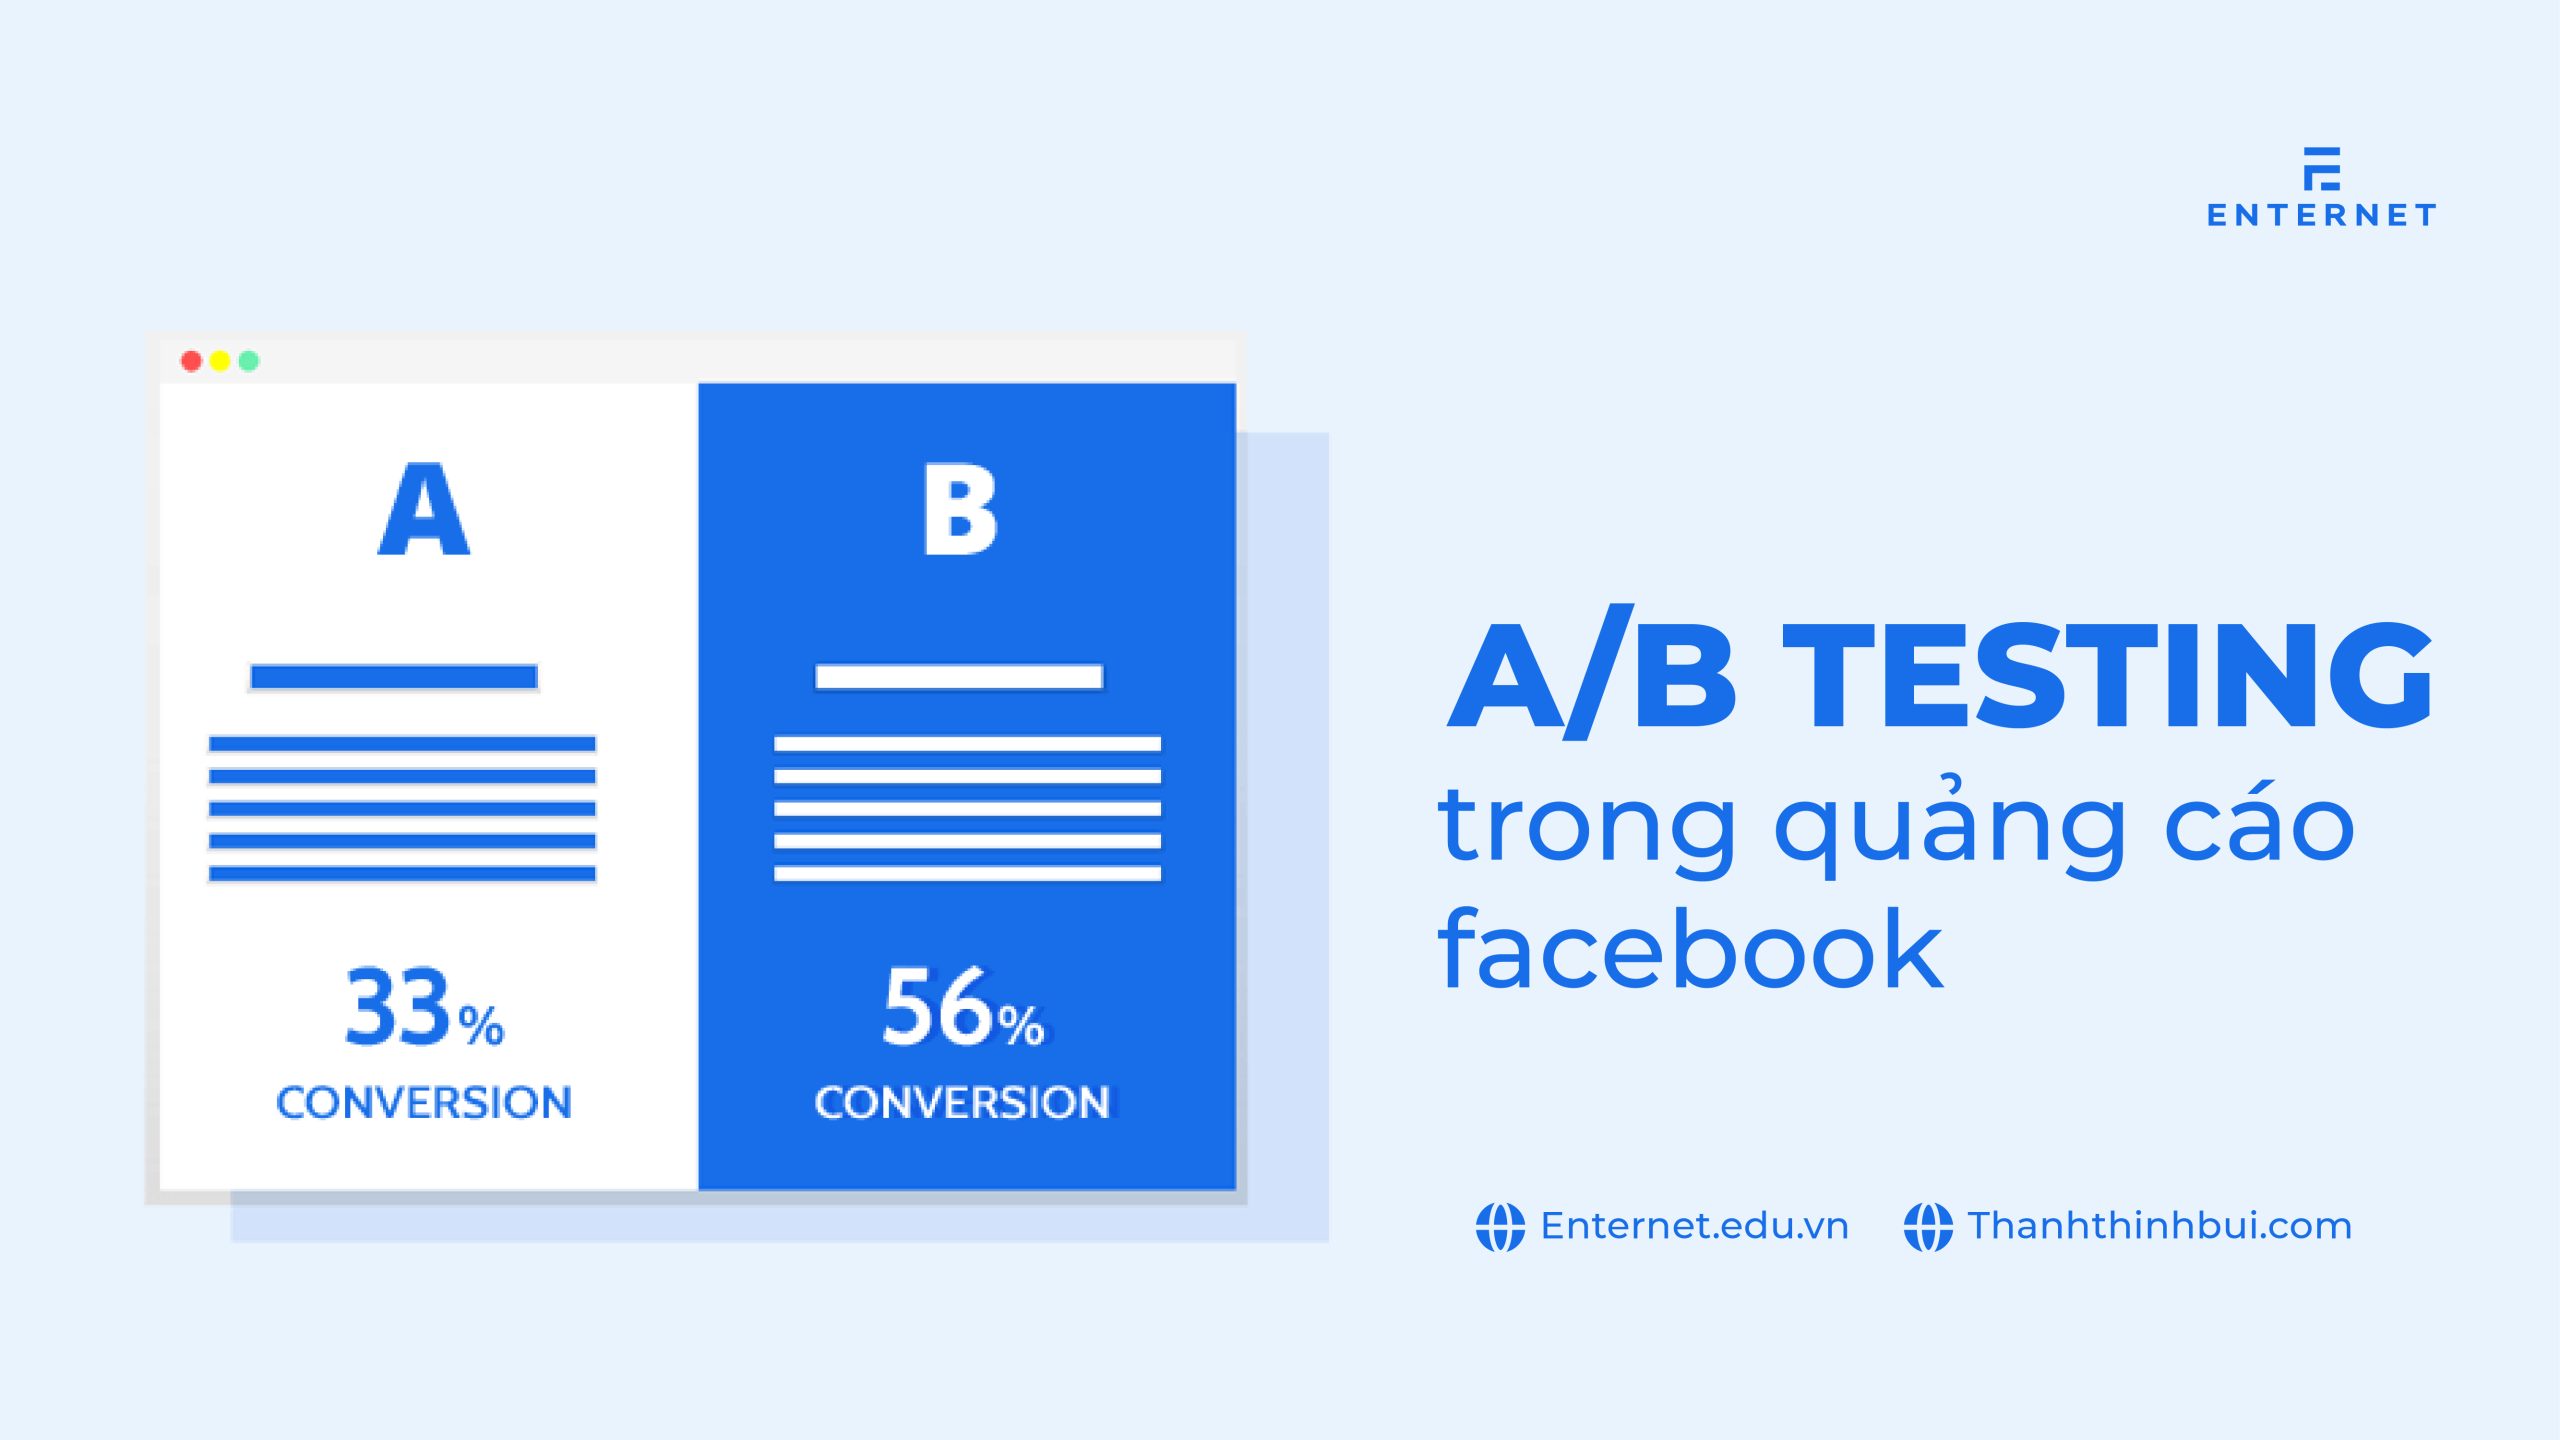 A/B testing là gì? Test quảng cáo Facebook thông qua A/B testing